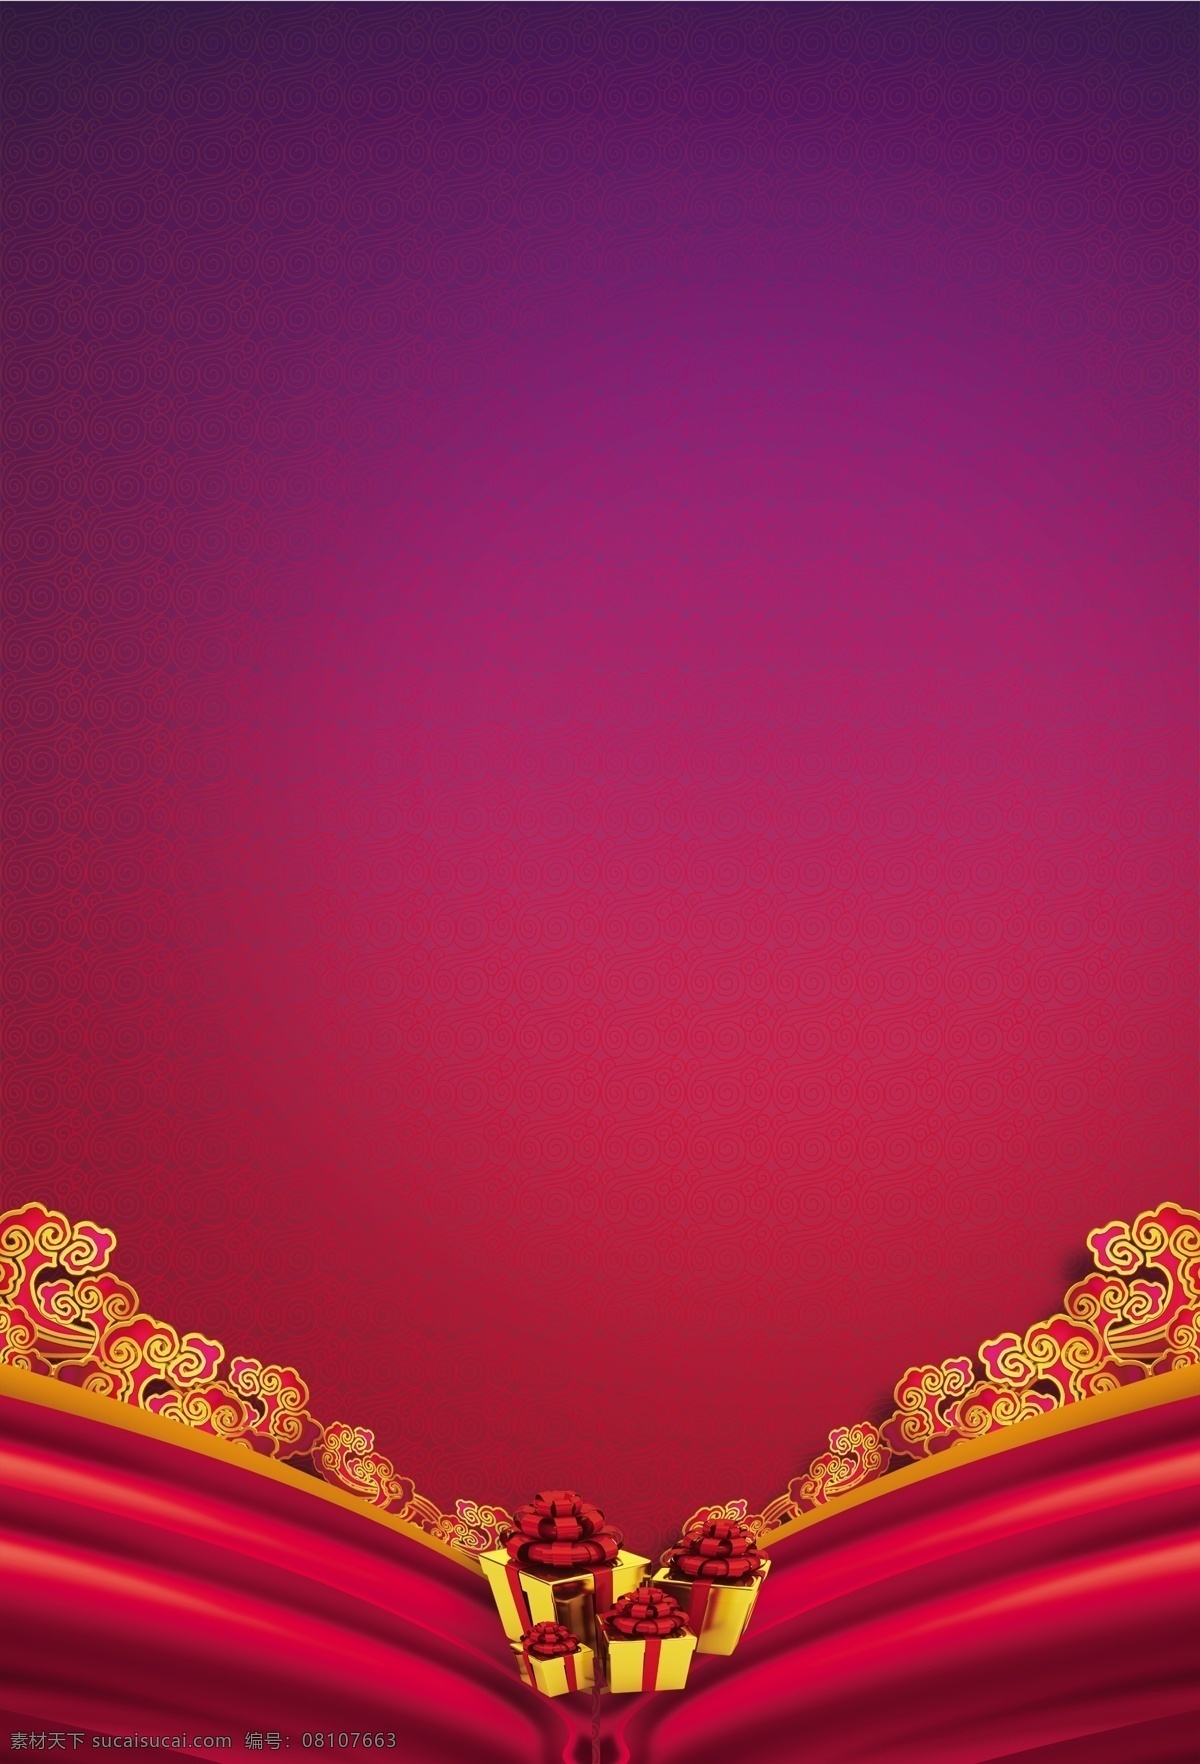 红 紫色 复古 舞台 帷幕 渐变 线条 背景 红色帷幕 礼品盒 波浪纹 花纹 光晕 线条形状 蓝紫色背景